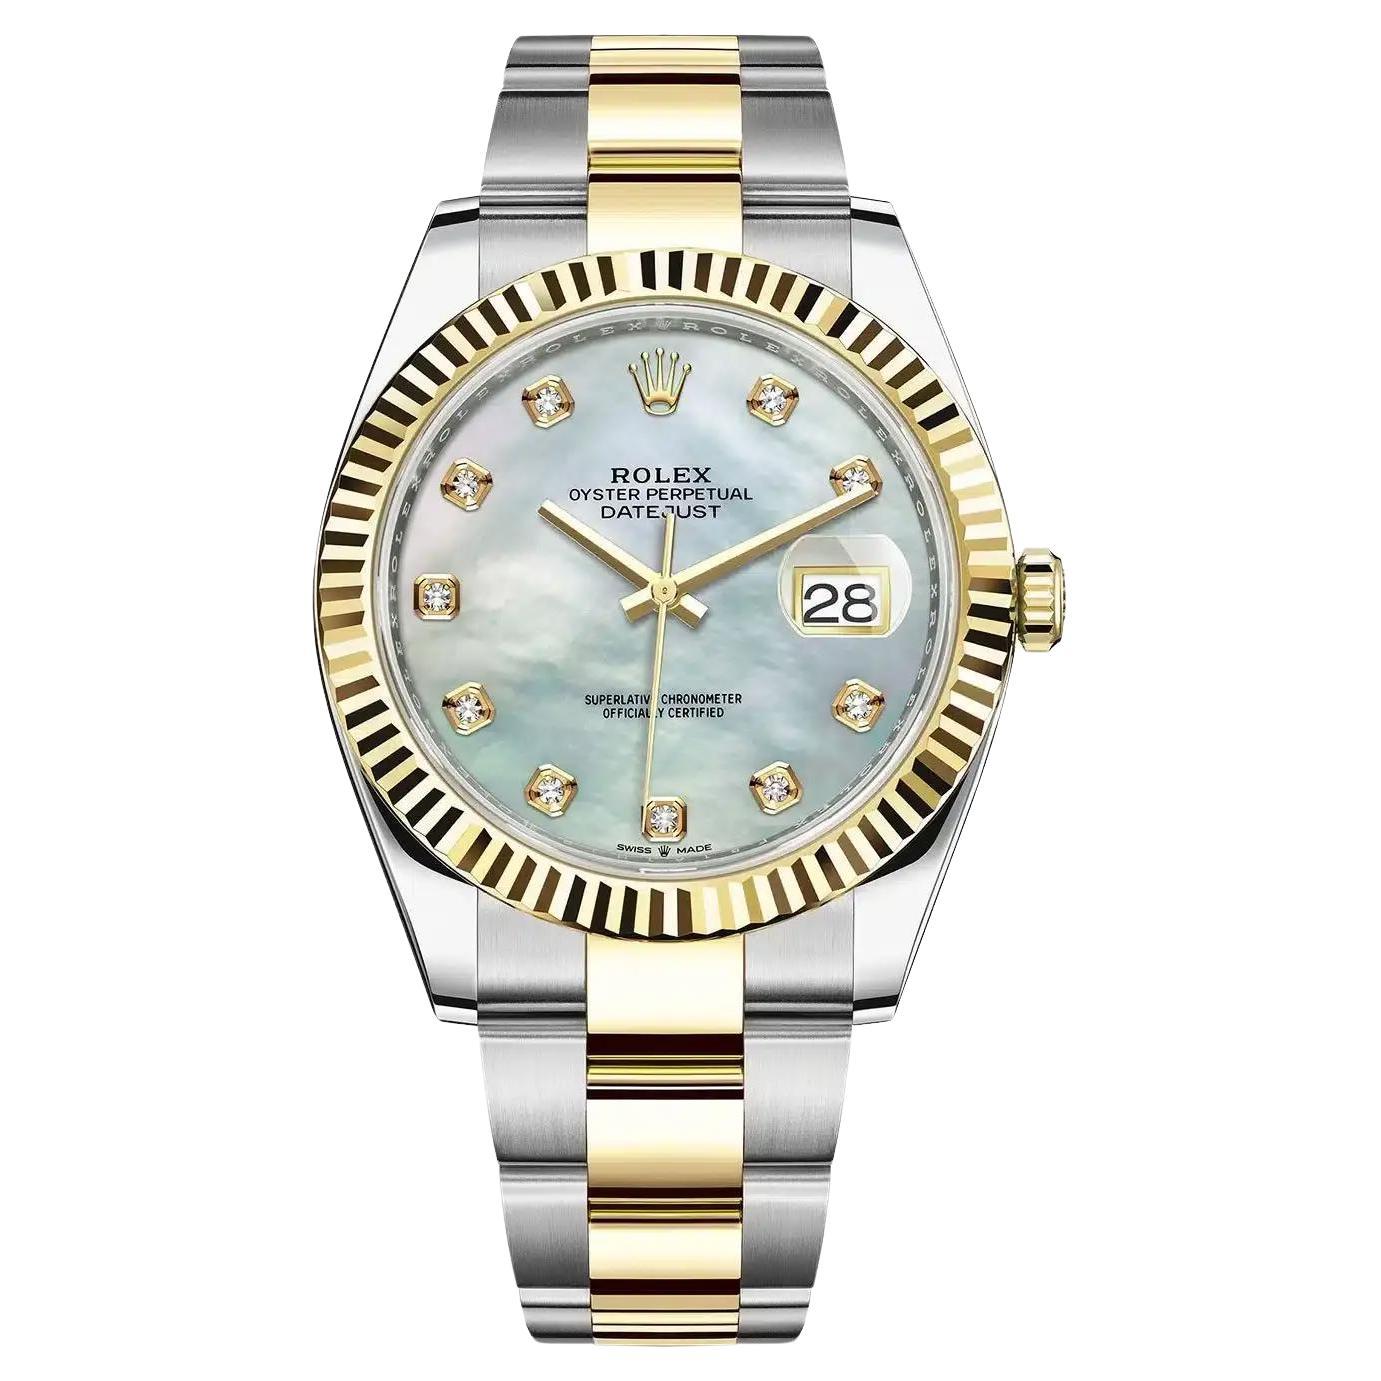 NUEVO Reloj Rolex Datejust de oro amarillo de 18 quilates, acero, esfera blanca con diamantes 126333 